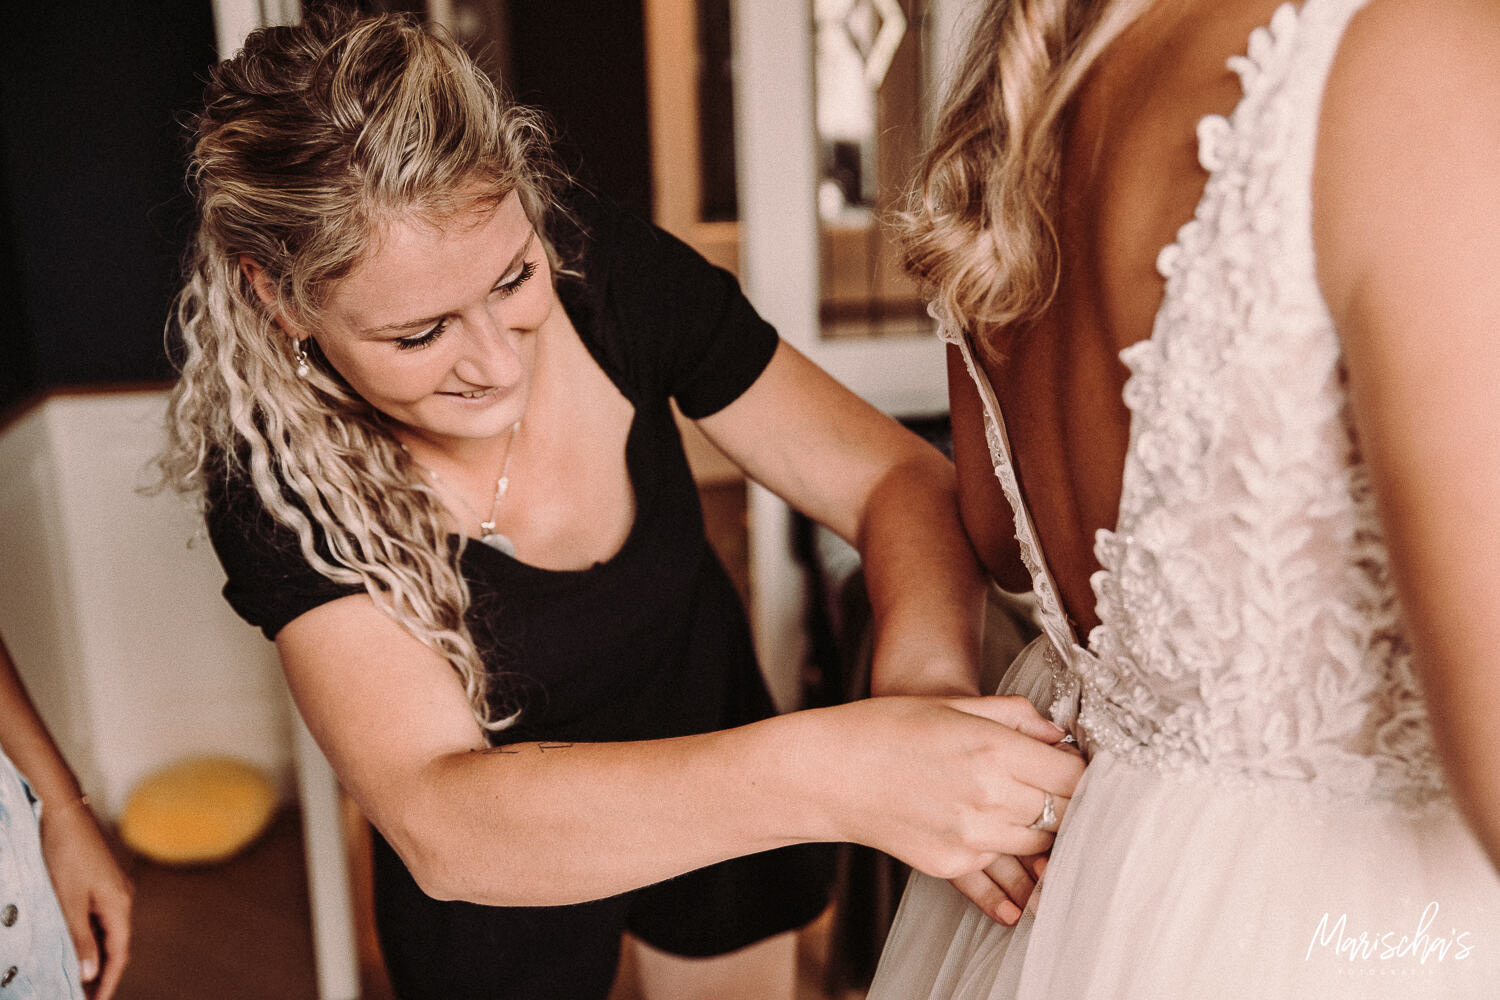 Bruidsfotograaf voor bruidsfotografie in noord holland